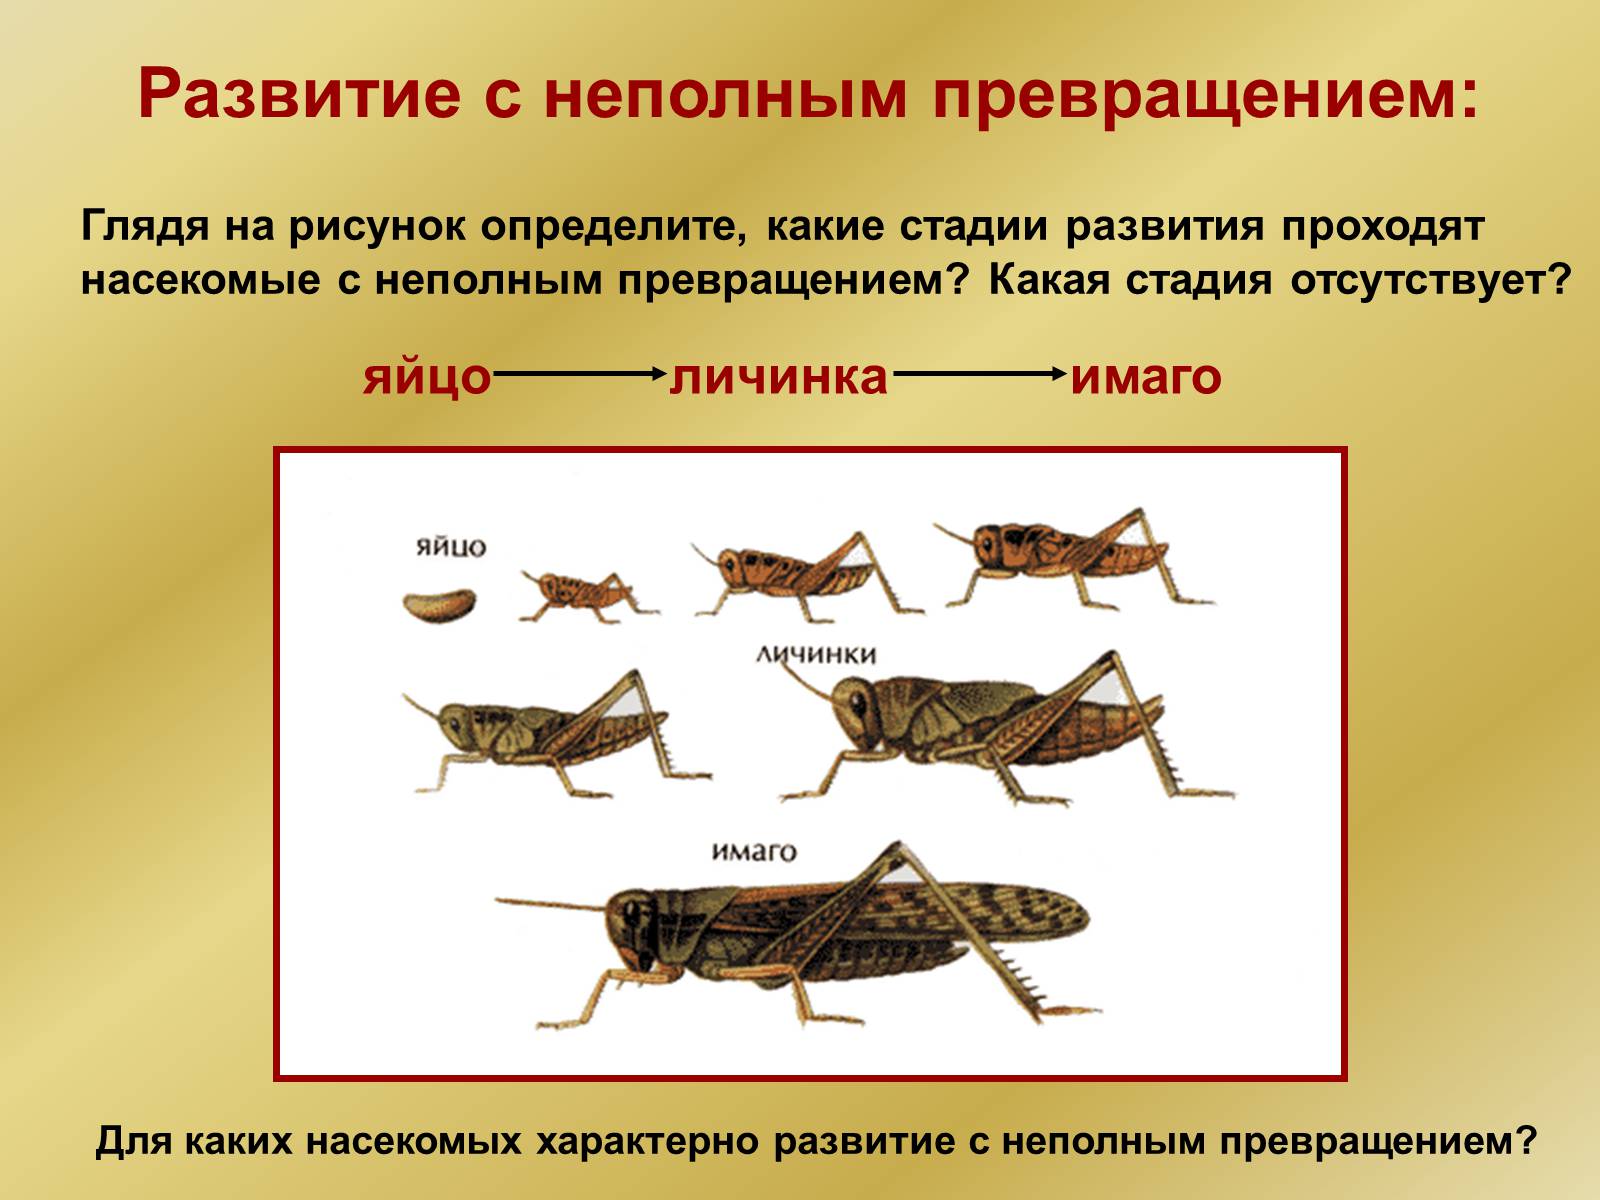 Для каких насекомых характерно развитие с неполным превращением